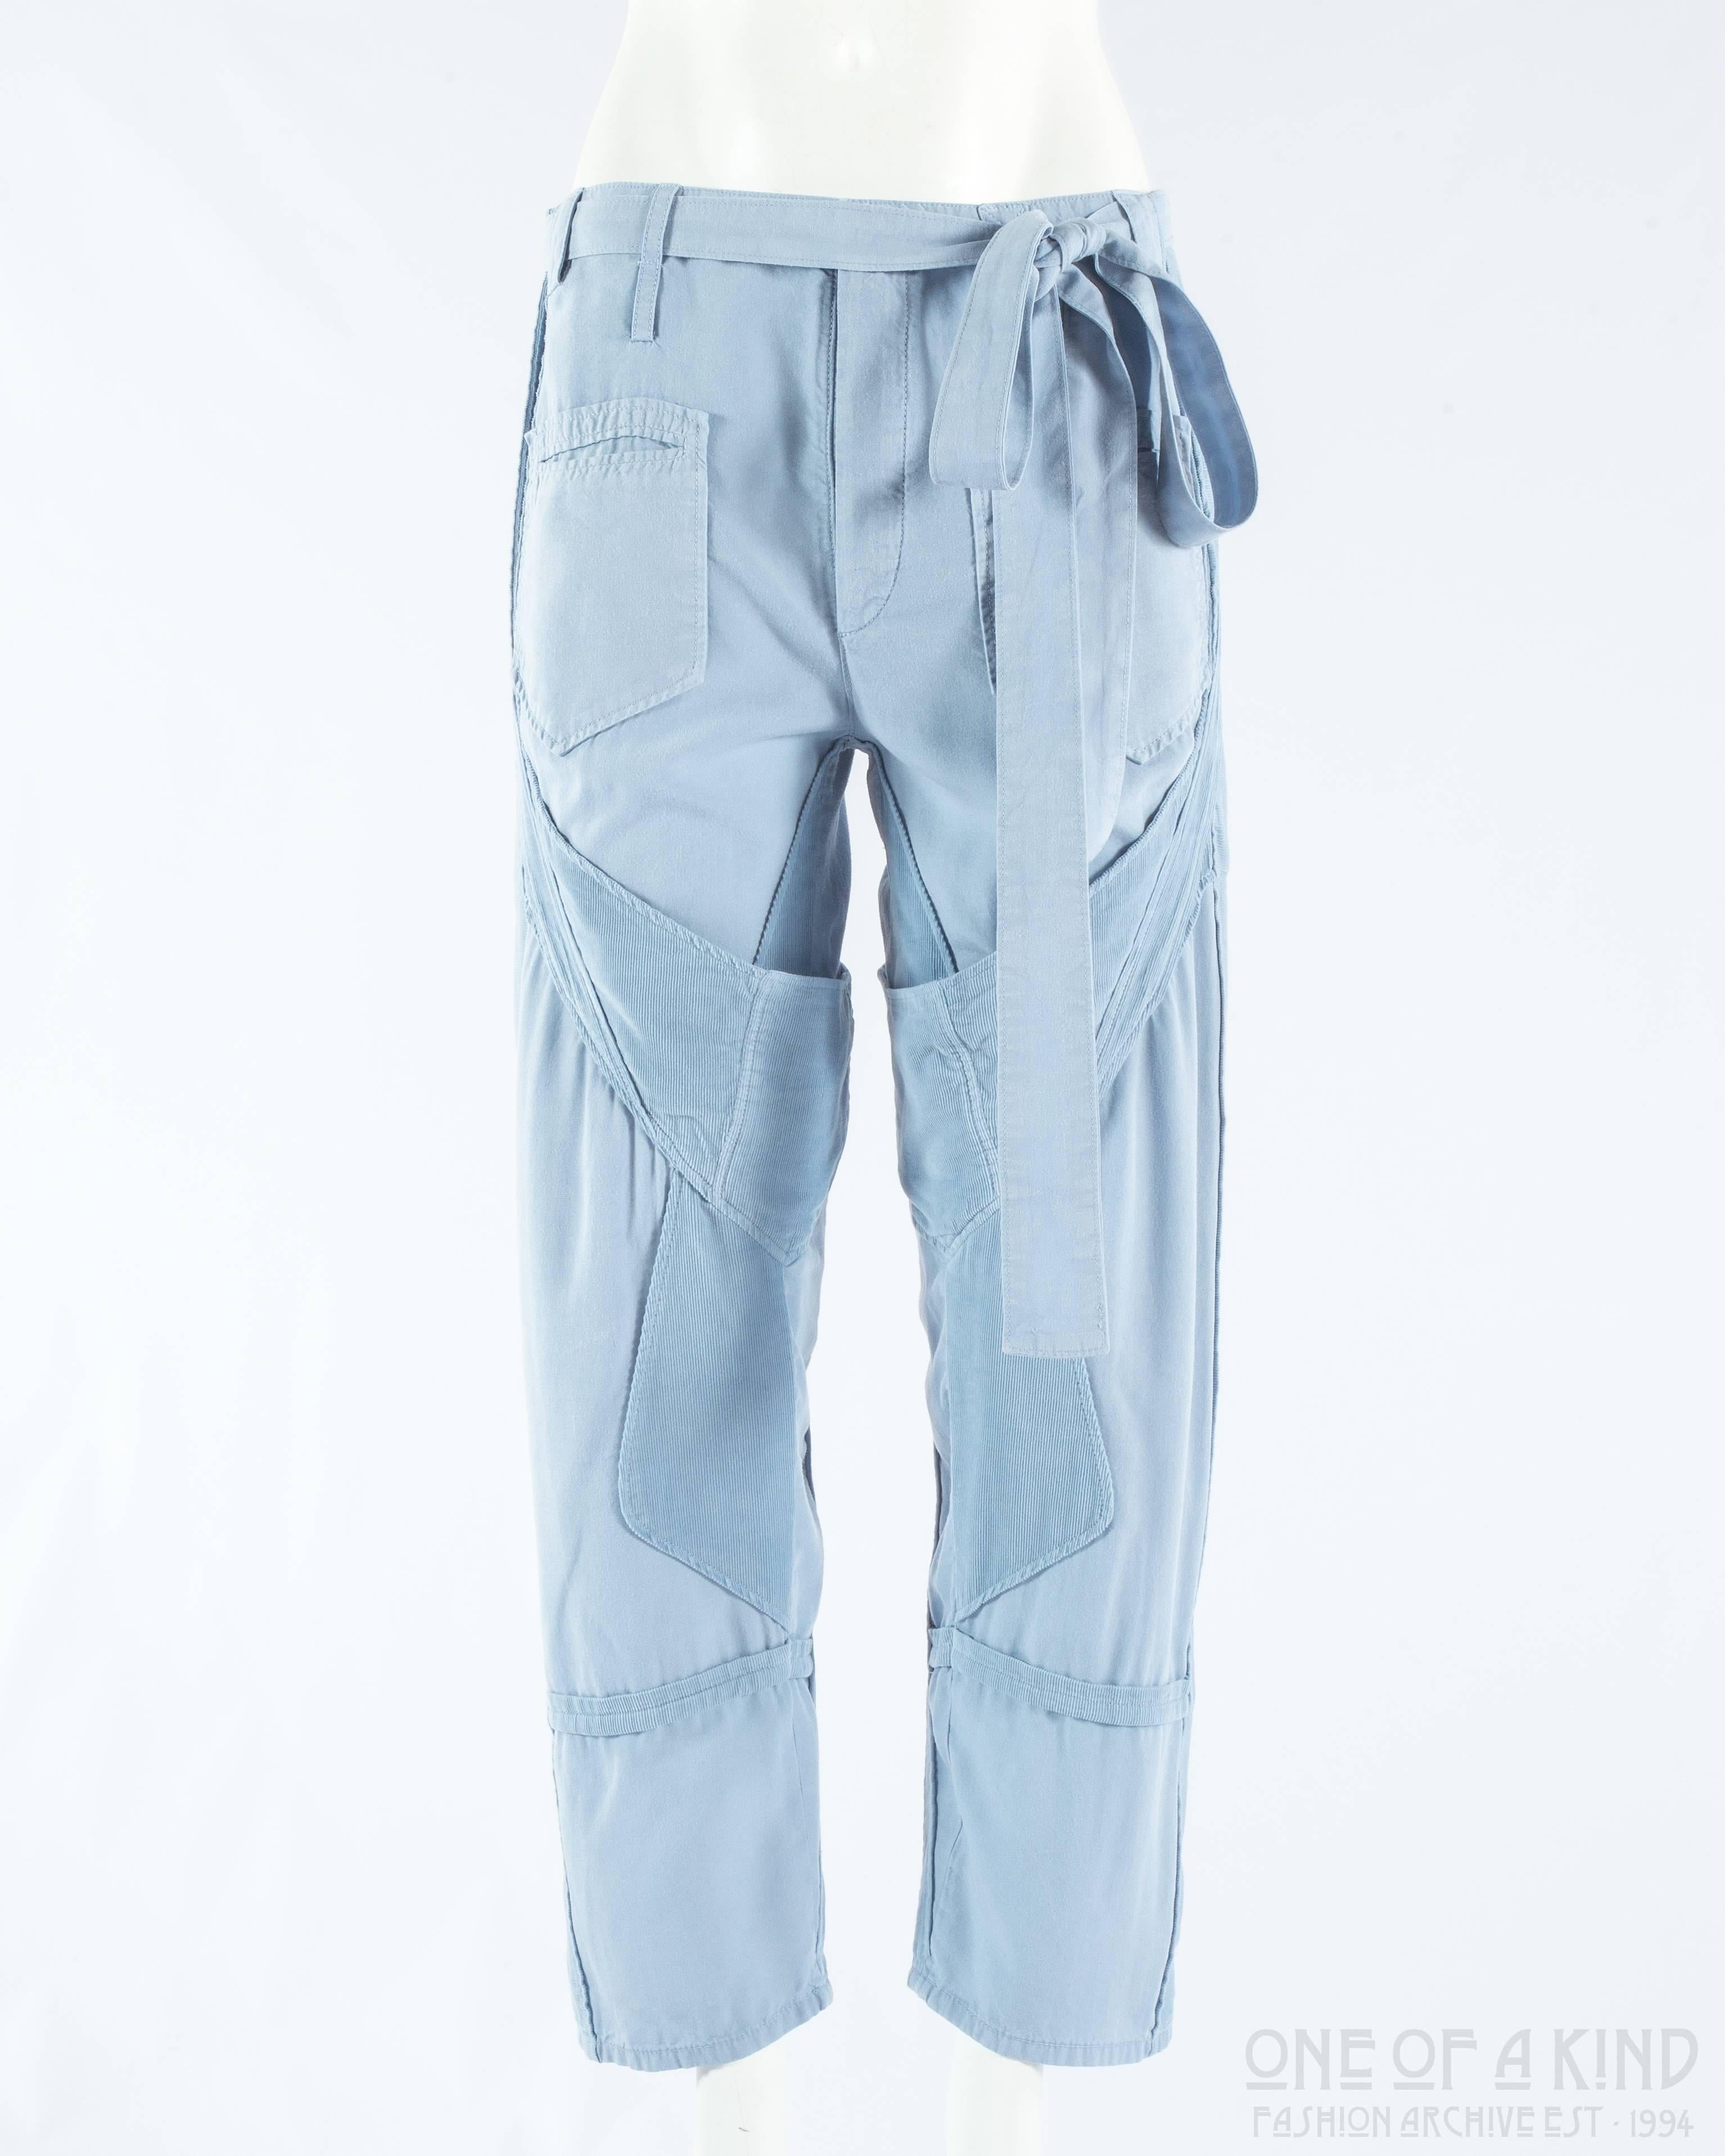 Balenciaga by Nicolas Ghesquière blue cotton and corduroy cargo pants

Spring-Summer 2002